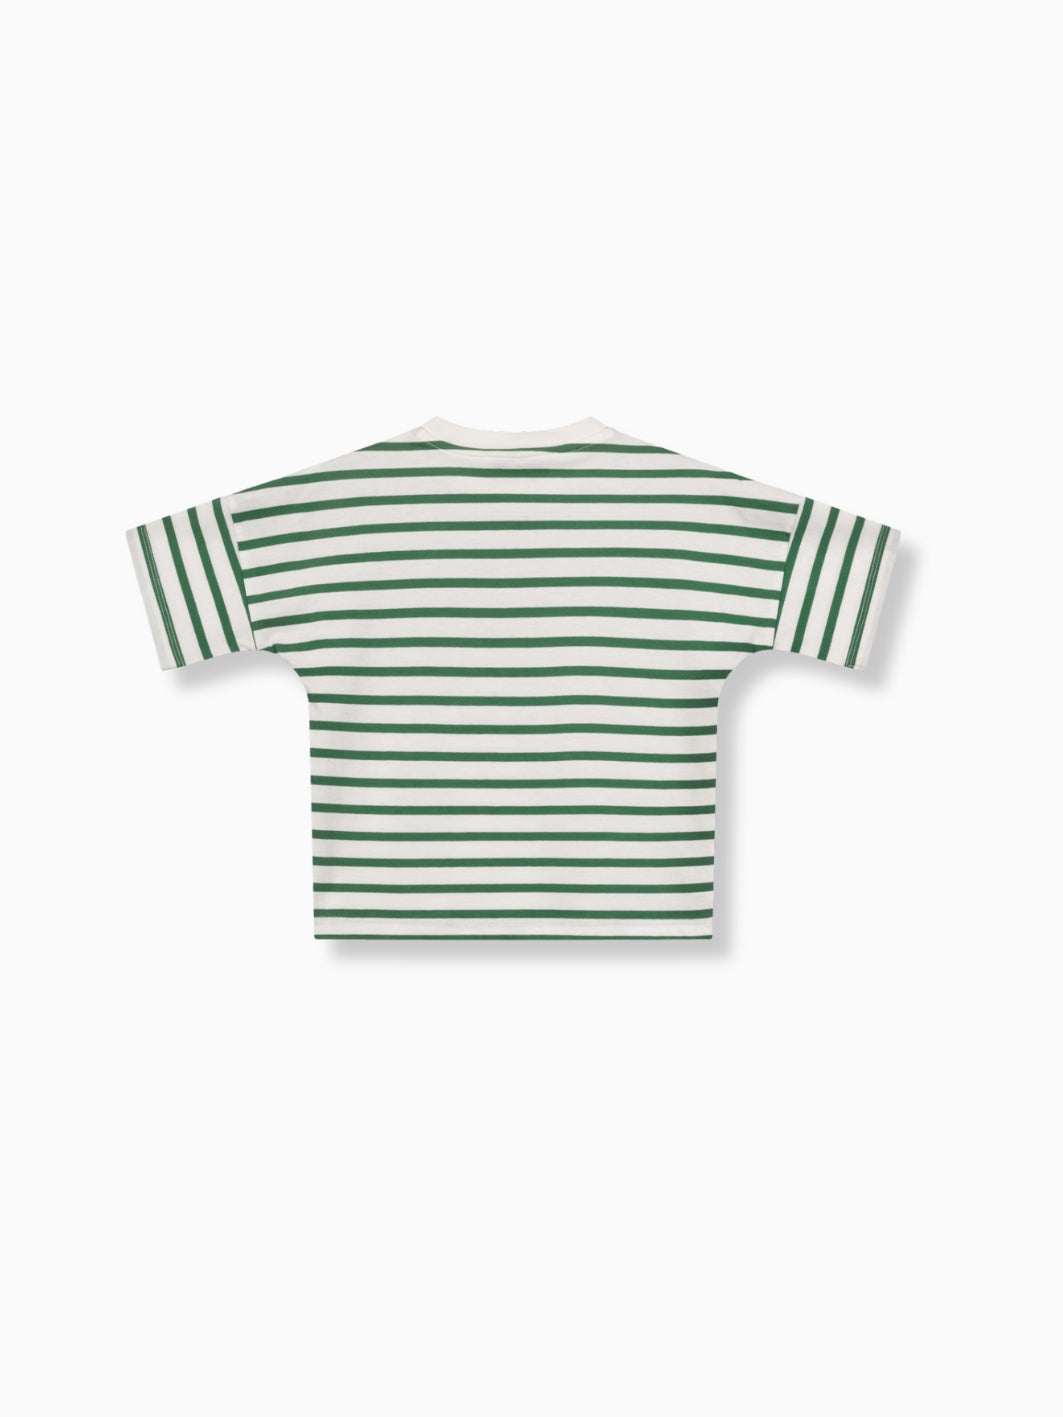 Striped Shirt Kids - FAMVIBES 